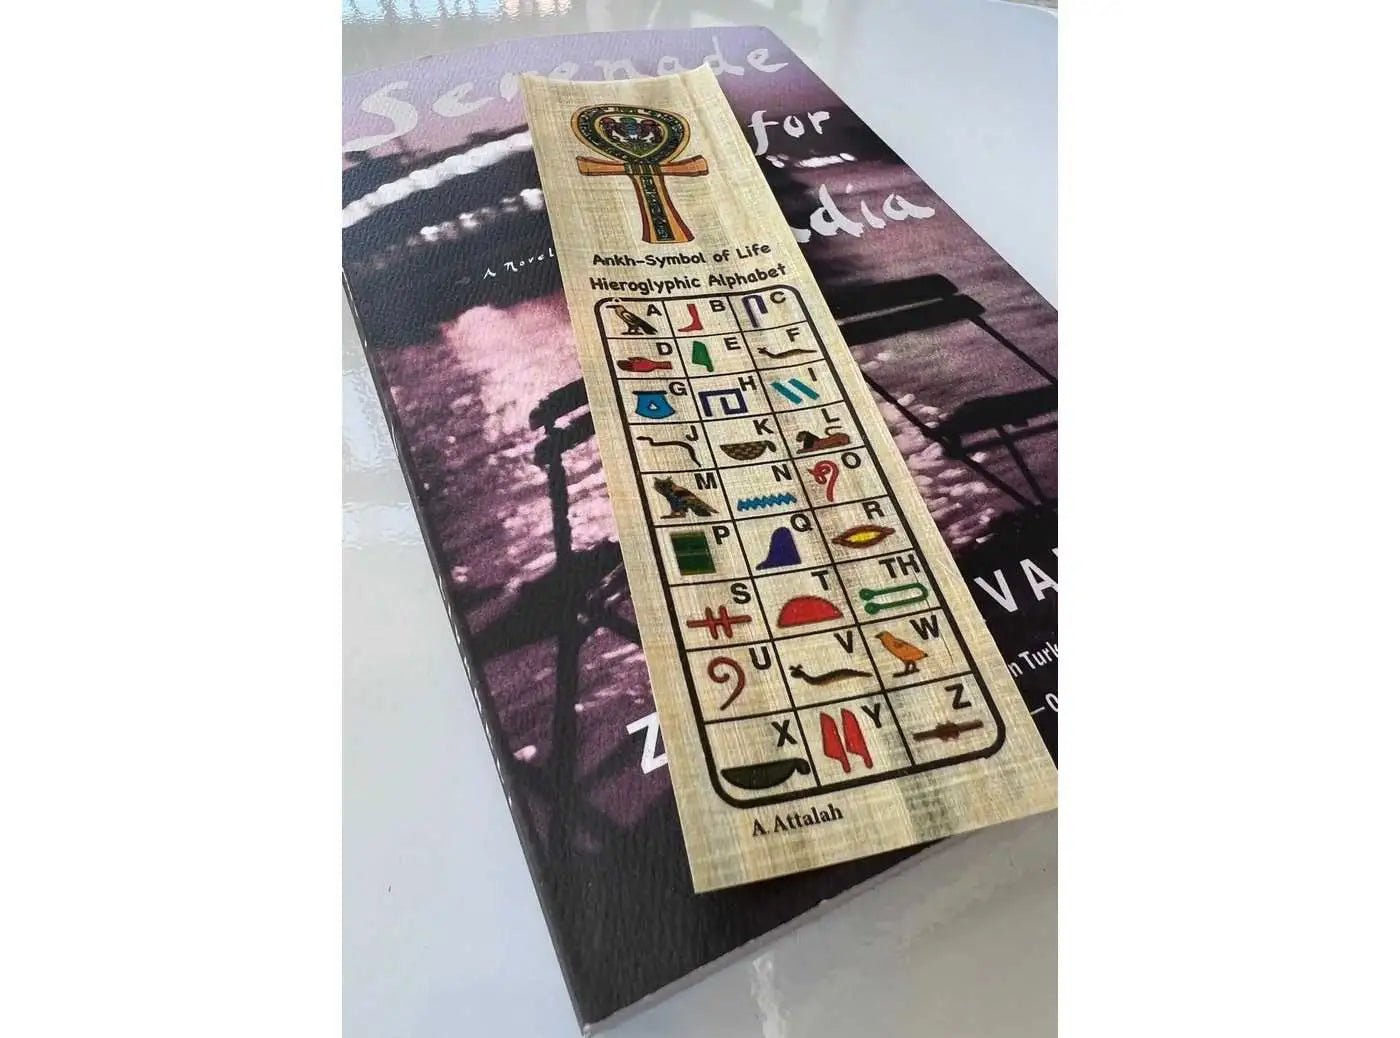 Hieroglyphs Paper - Akhenaton - Hieroglyphic Alphabet - Egyptian Papyrus Bookmark History Educational